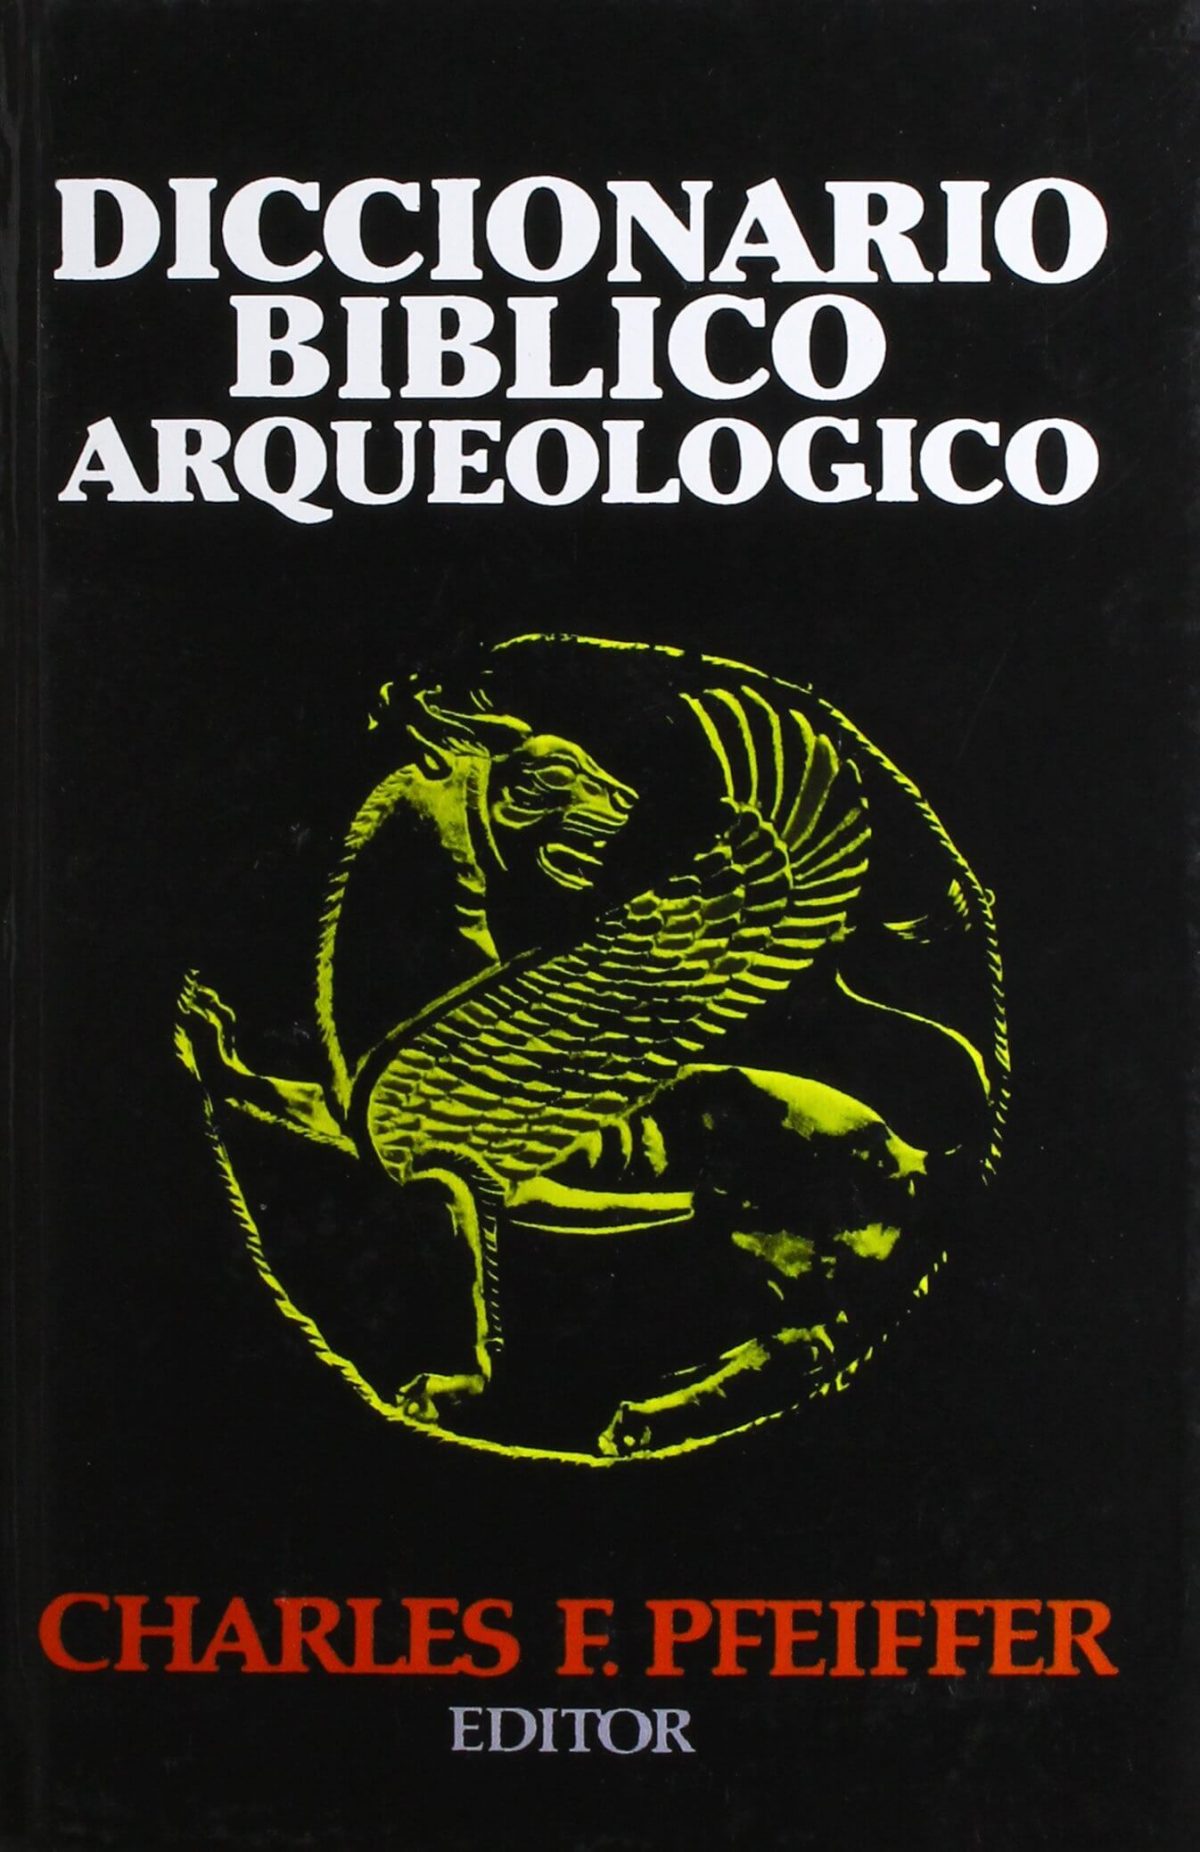 DICCIONARIO BIBLICO ARQUEOLOGICO